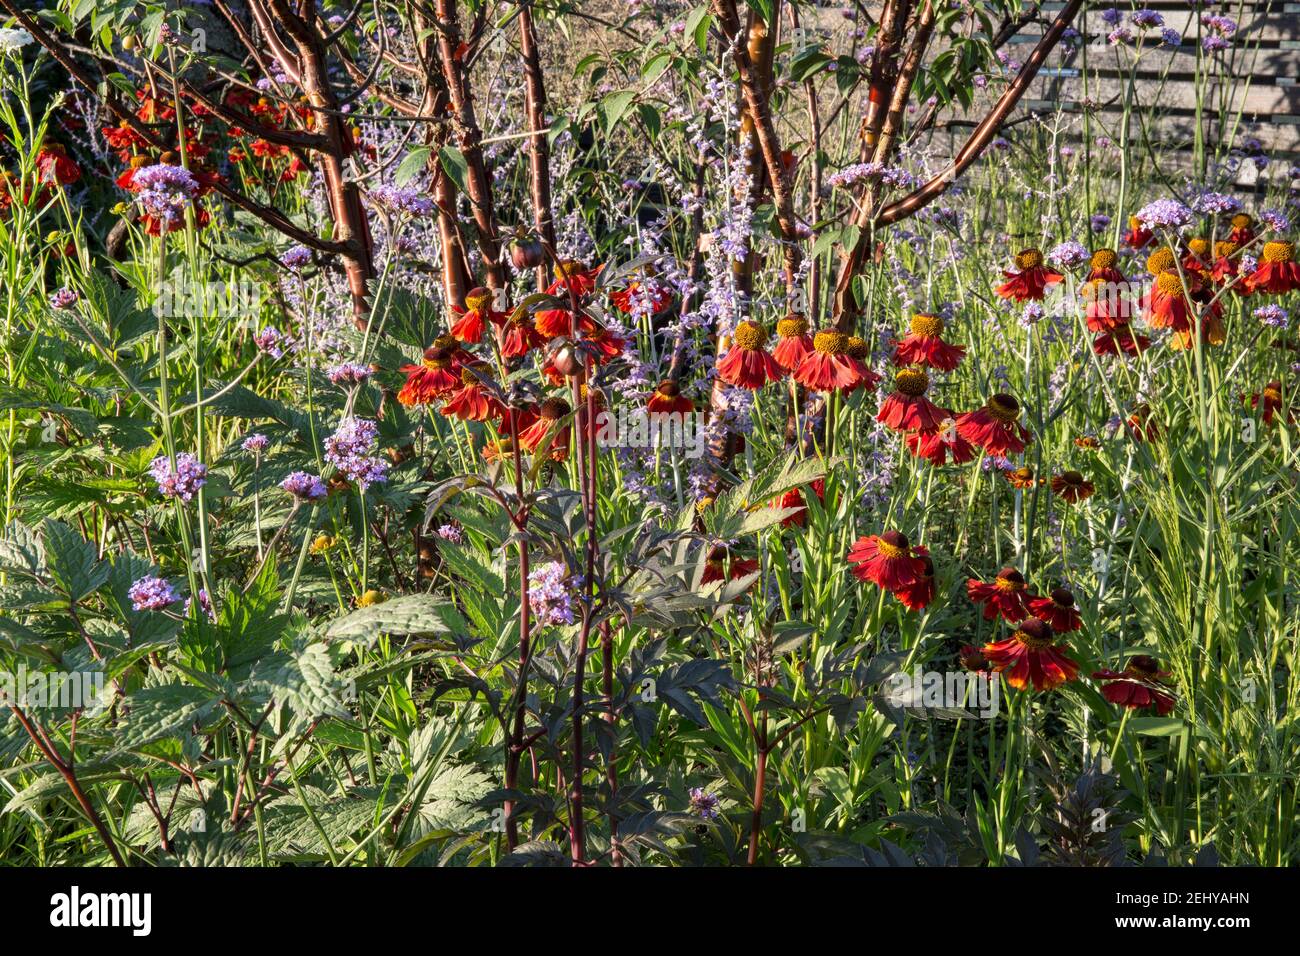 Sommerblumen kleiner Landhausgarten mit Helenium Moreheim Beauty und Verbena bonariensis unter dem Prunus serrula Baum in einem Blumenbeet an der Grenze zu England Großbritannien Stockfoto